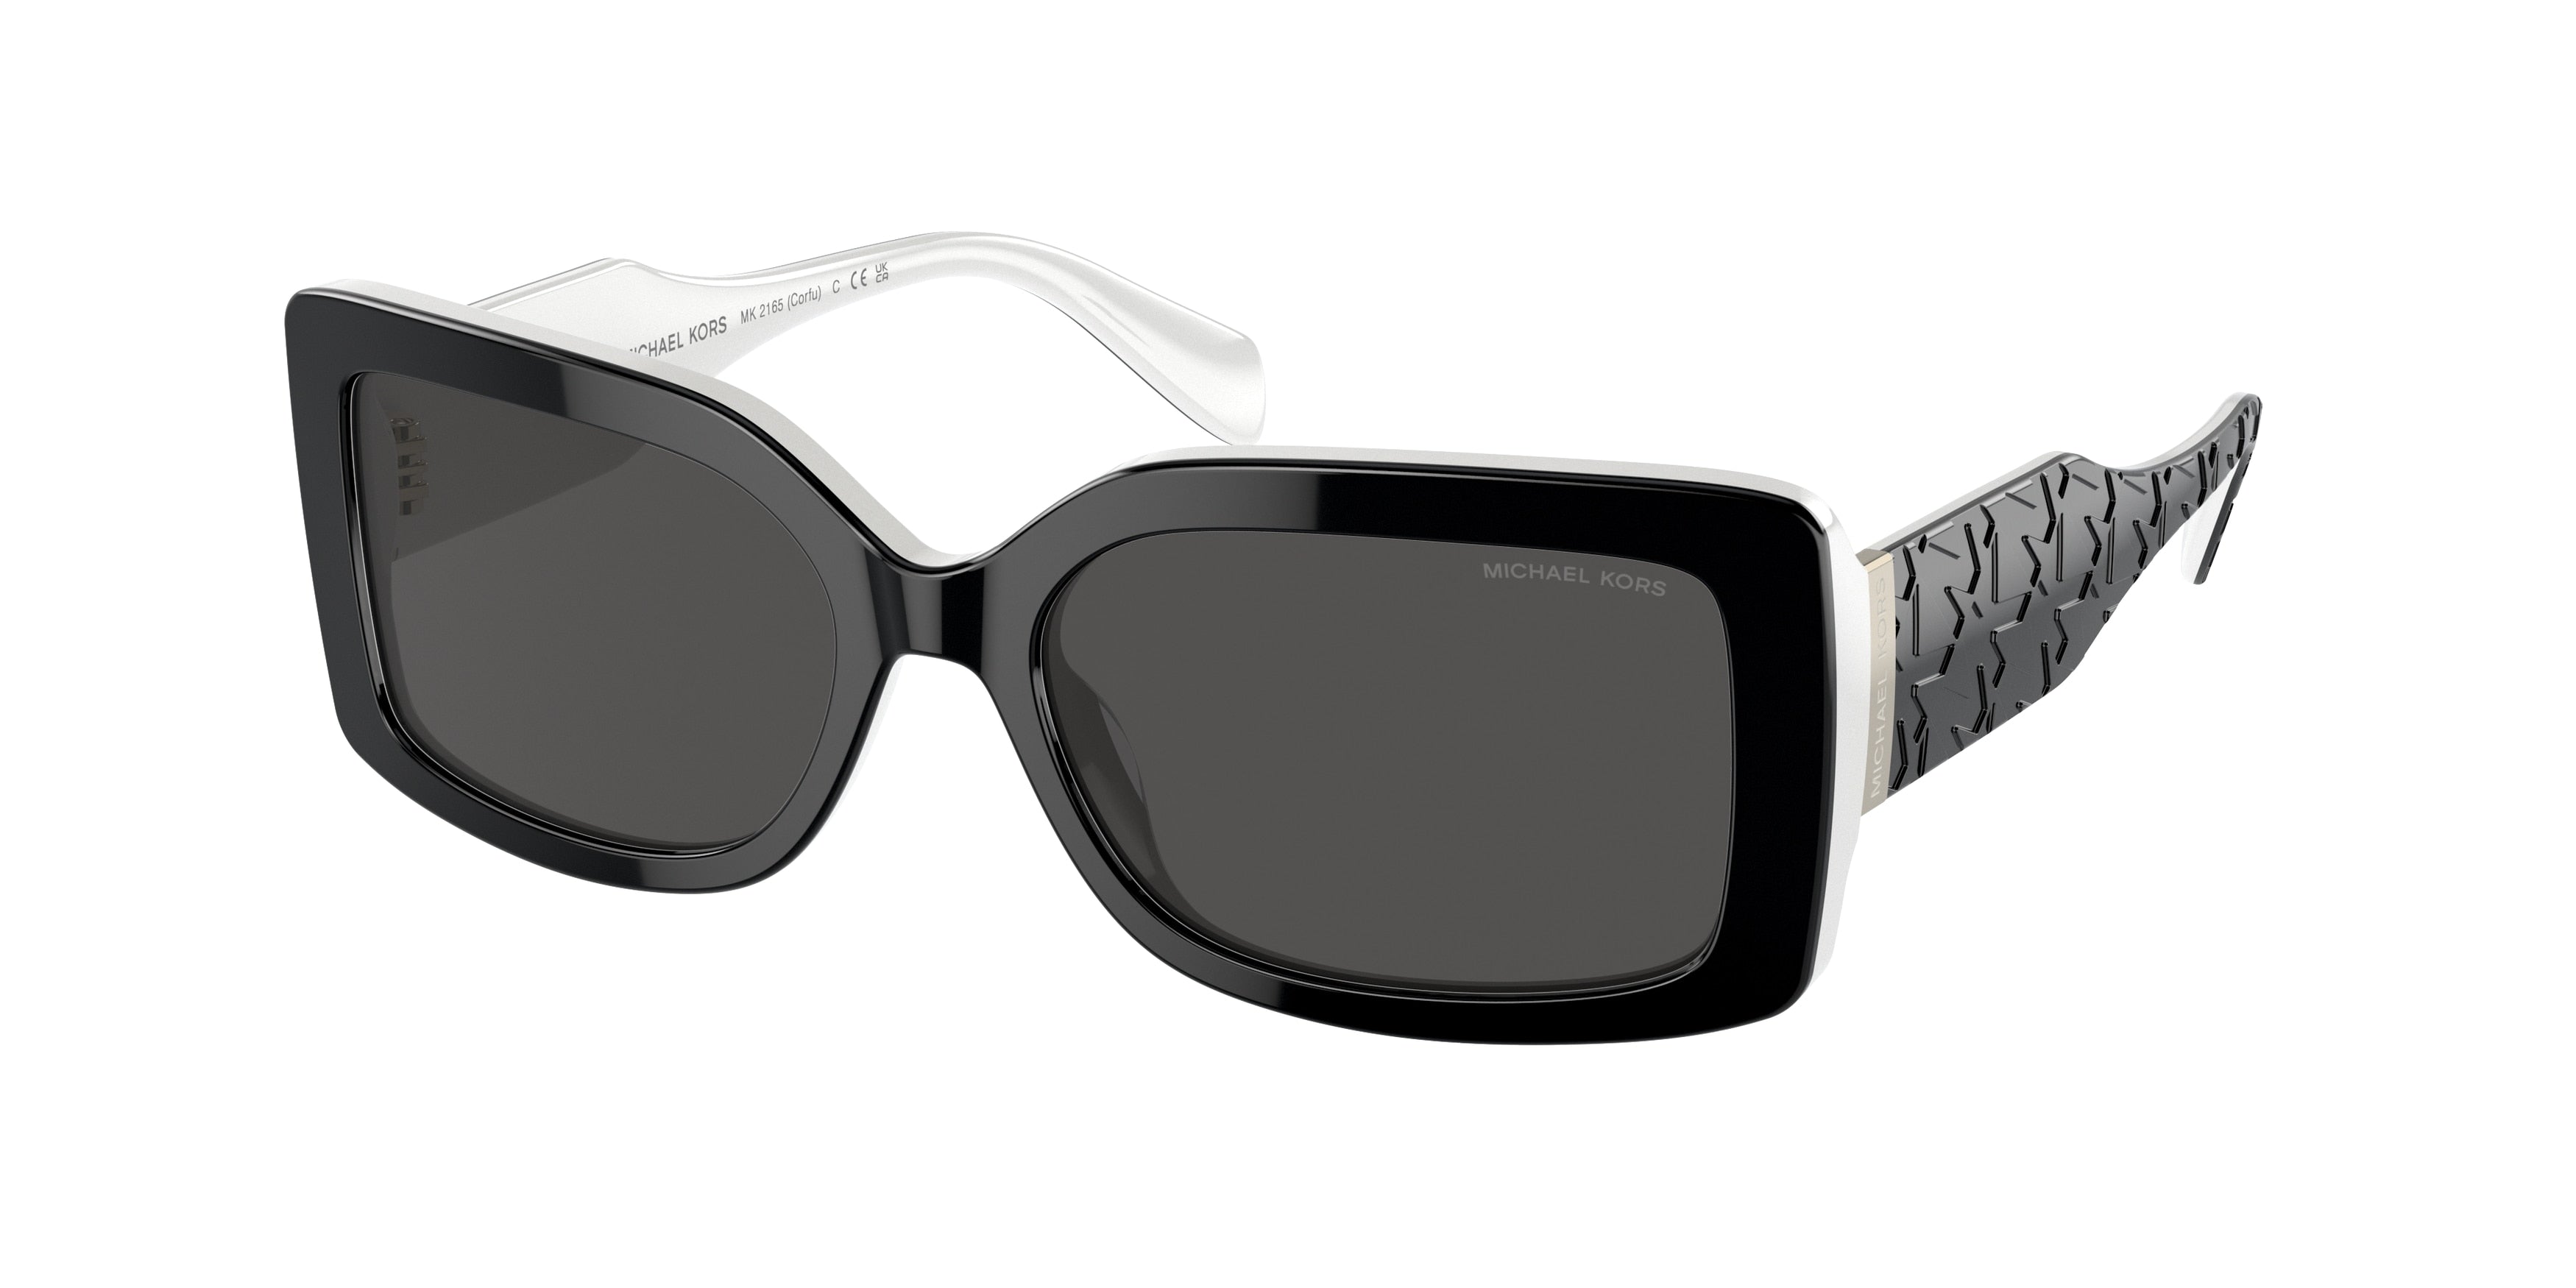 Michael Kors CORFU MK2165 Rectangle Sunglasses  392087-Black / White 56-140-17 - Color Map Black